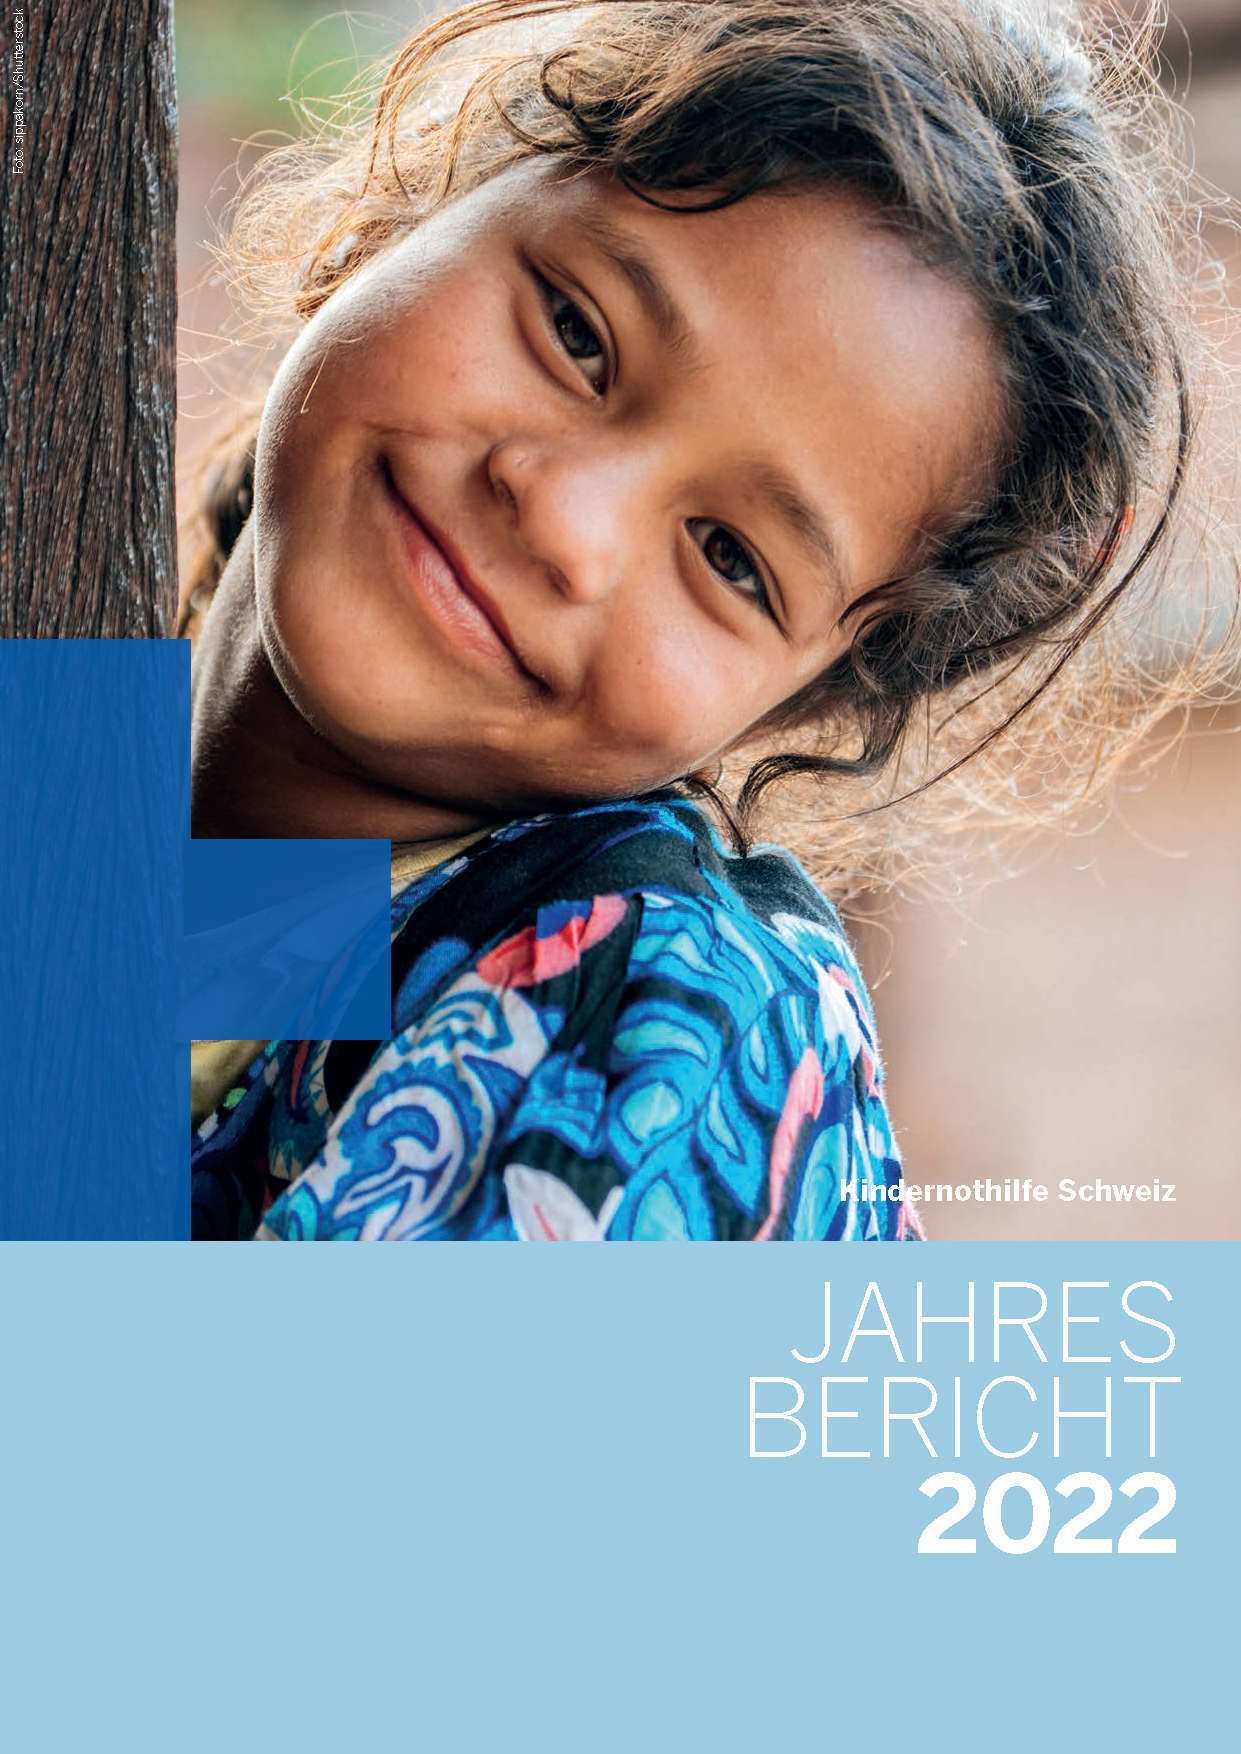 Cover des Jahresberichts 2022 der Kindernothilfe Schweiz (Quelle: Kindernothilfe)